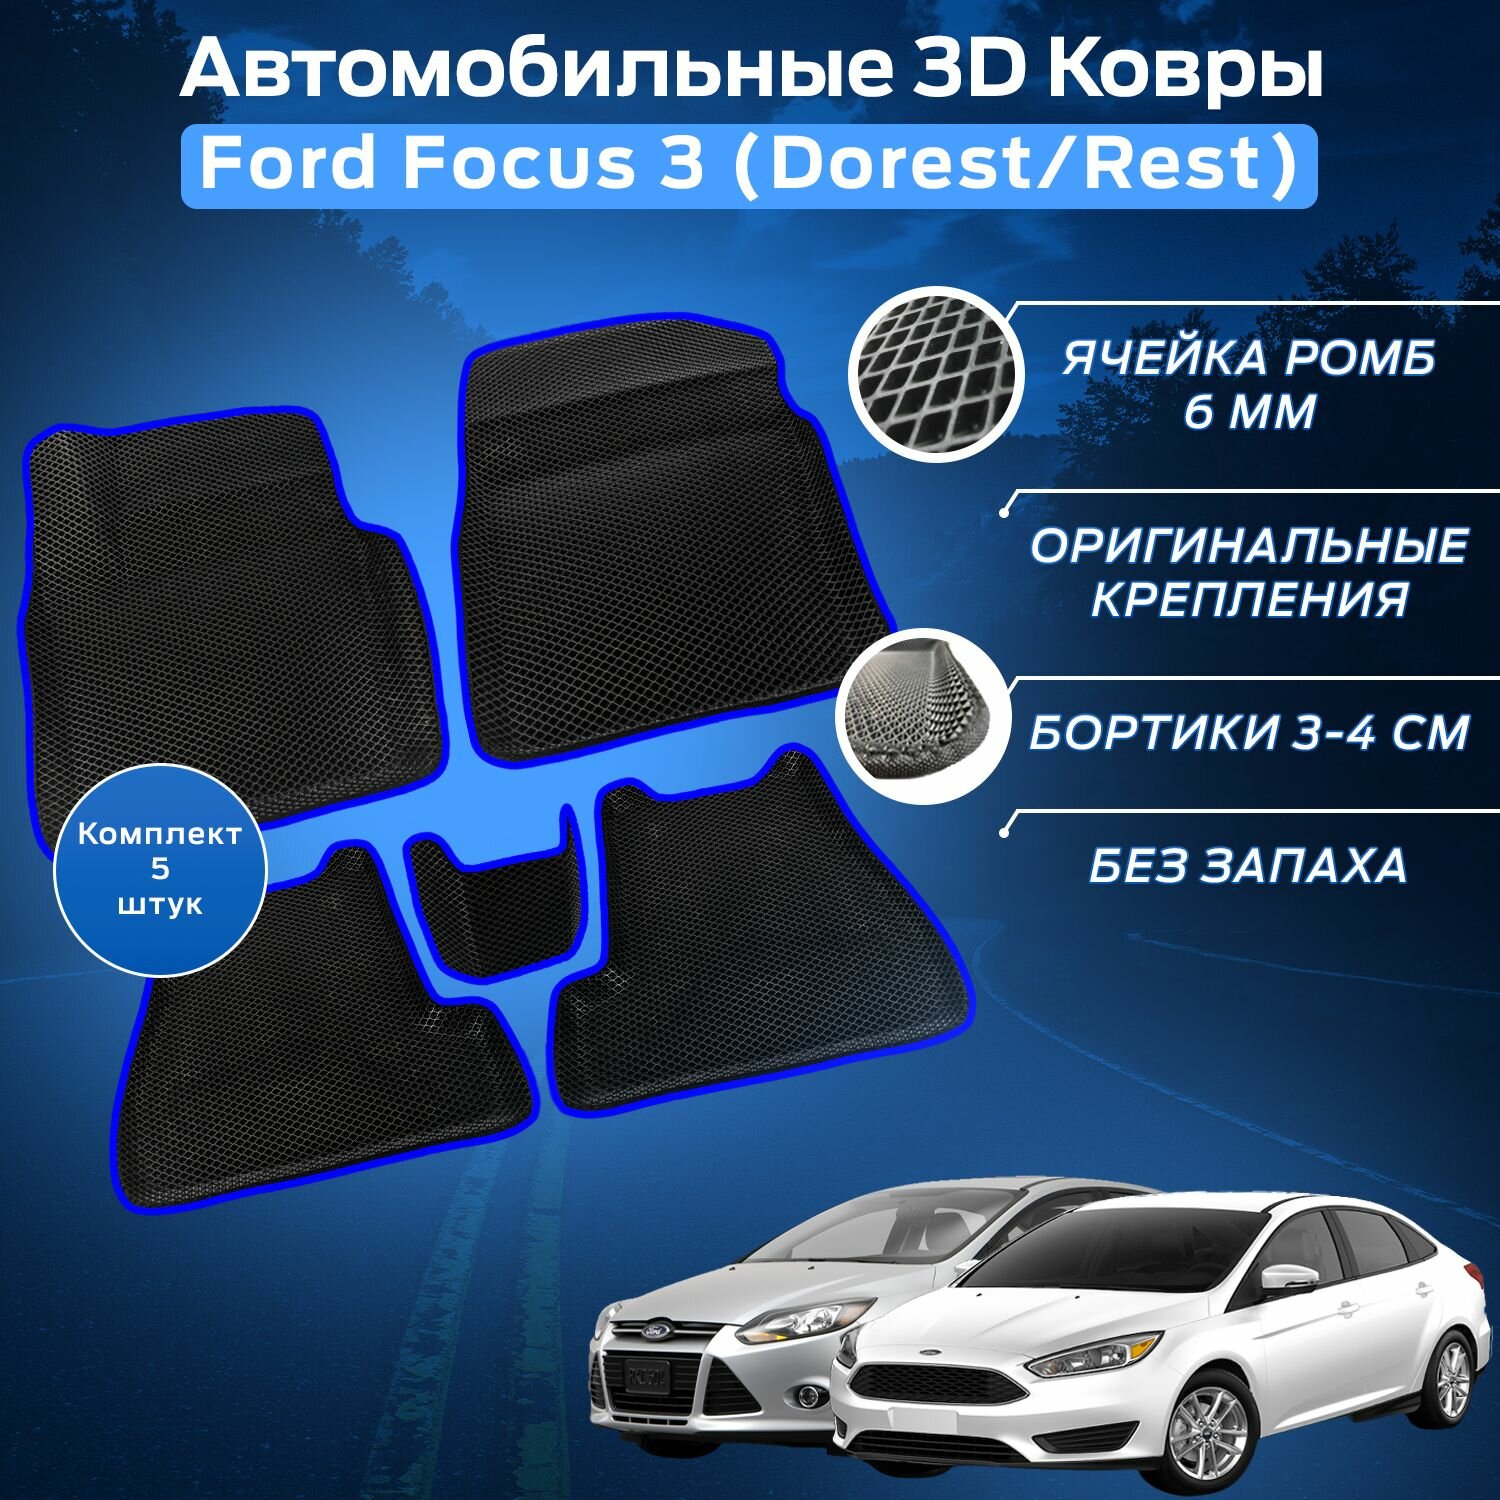 Пресс-EVA 3Д Ковры Форд Фокус 3 Дорест / Рест (Ева, эва, коврики с бортами) Ford Focus 3 Dorest / Rest / Синие